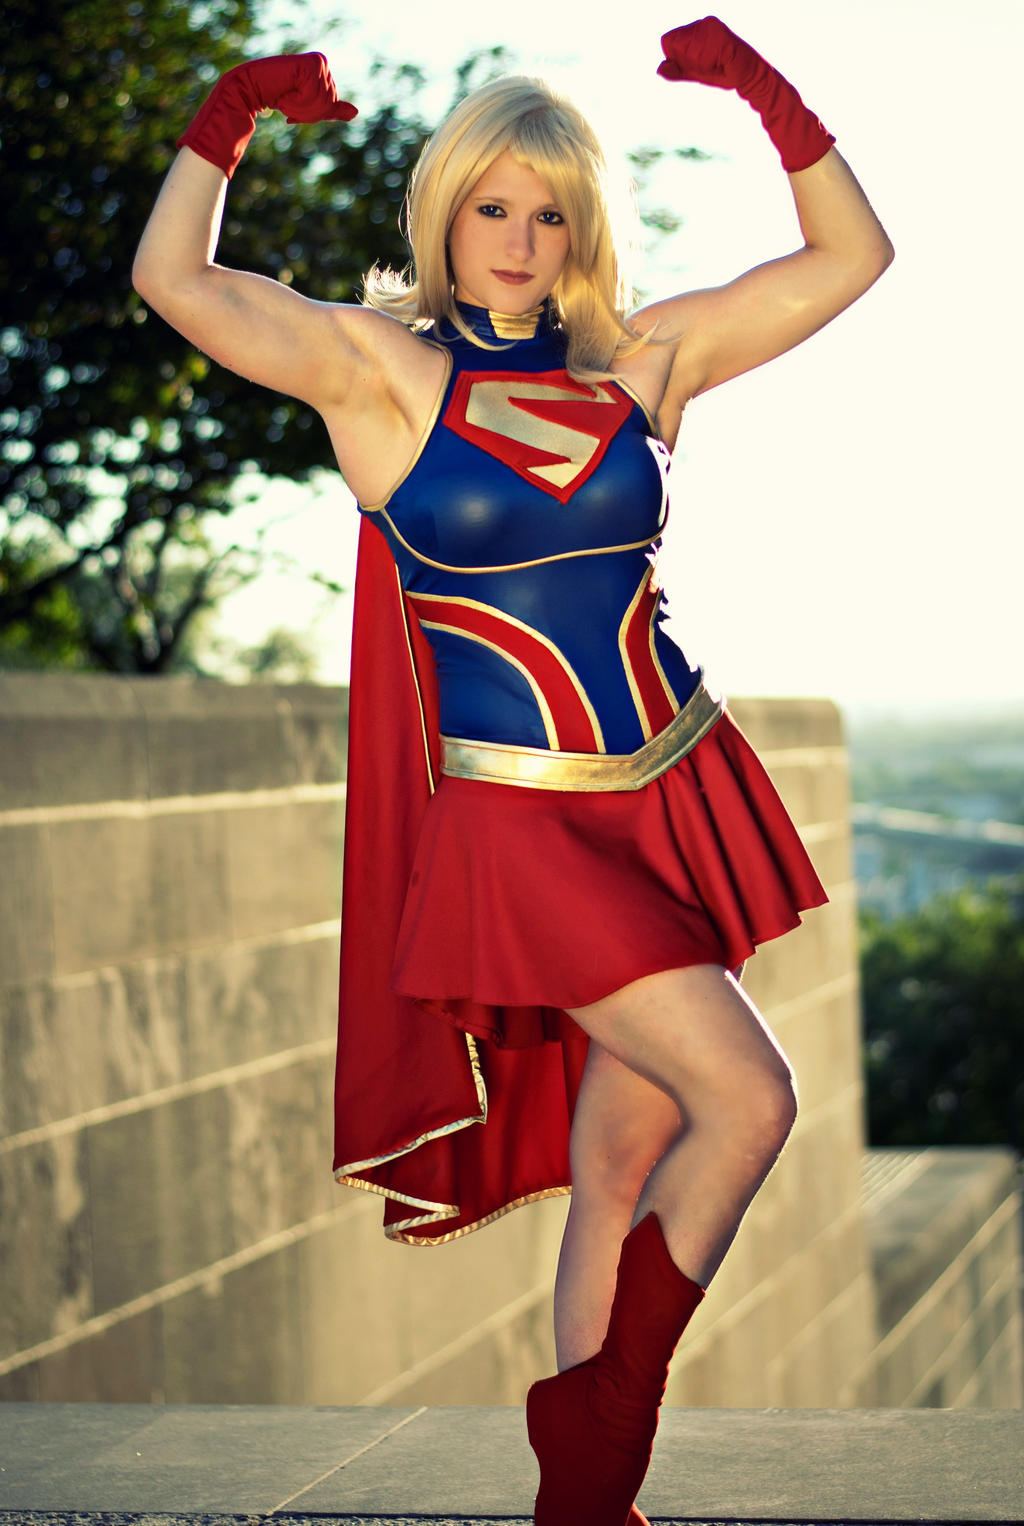 Supergirl Injustice Cosplay Costume by NerdySiren on DeviantArt